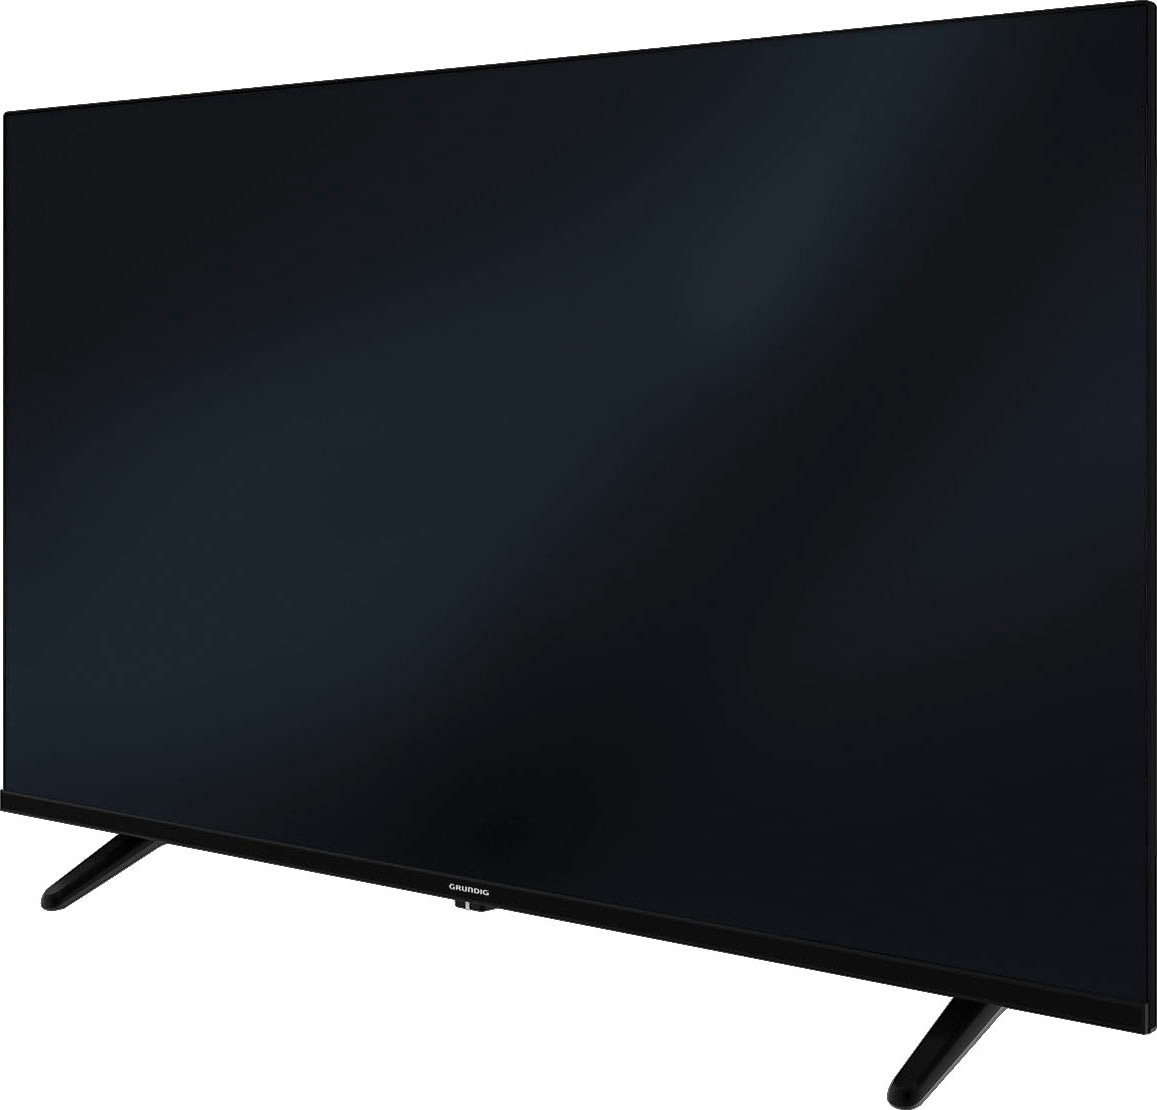 Grundig LED-Fernseher »32 GHB 5240«, 80 cm/32 Zoll, HD-ready